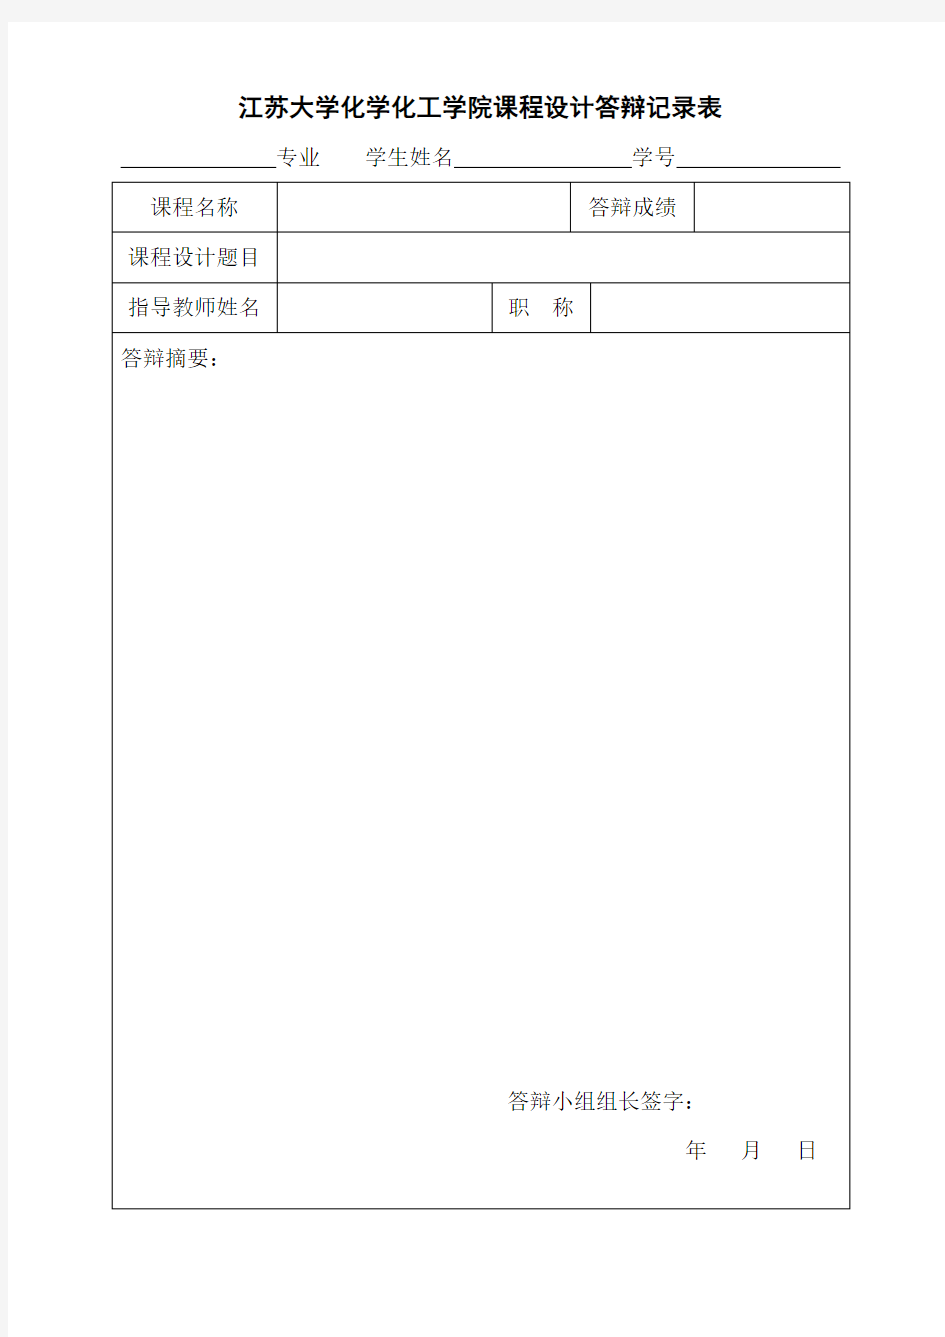 江苏大学化学化工学院课程设计答辩记录表